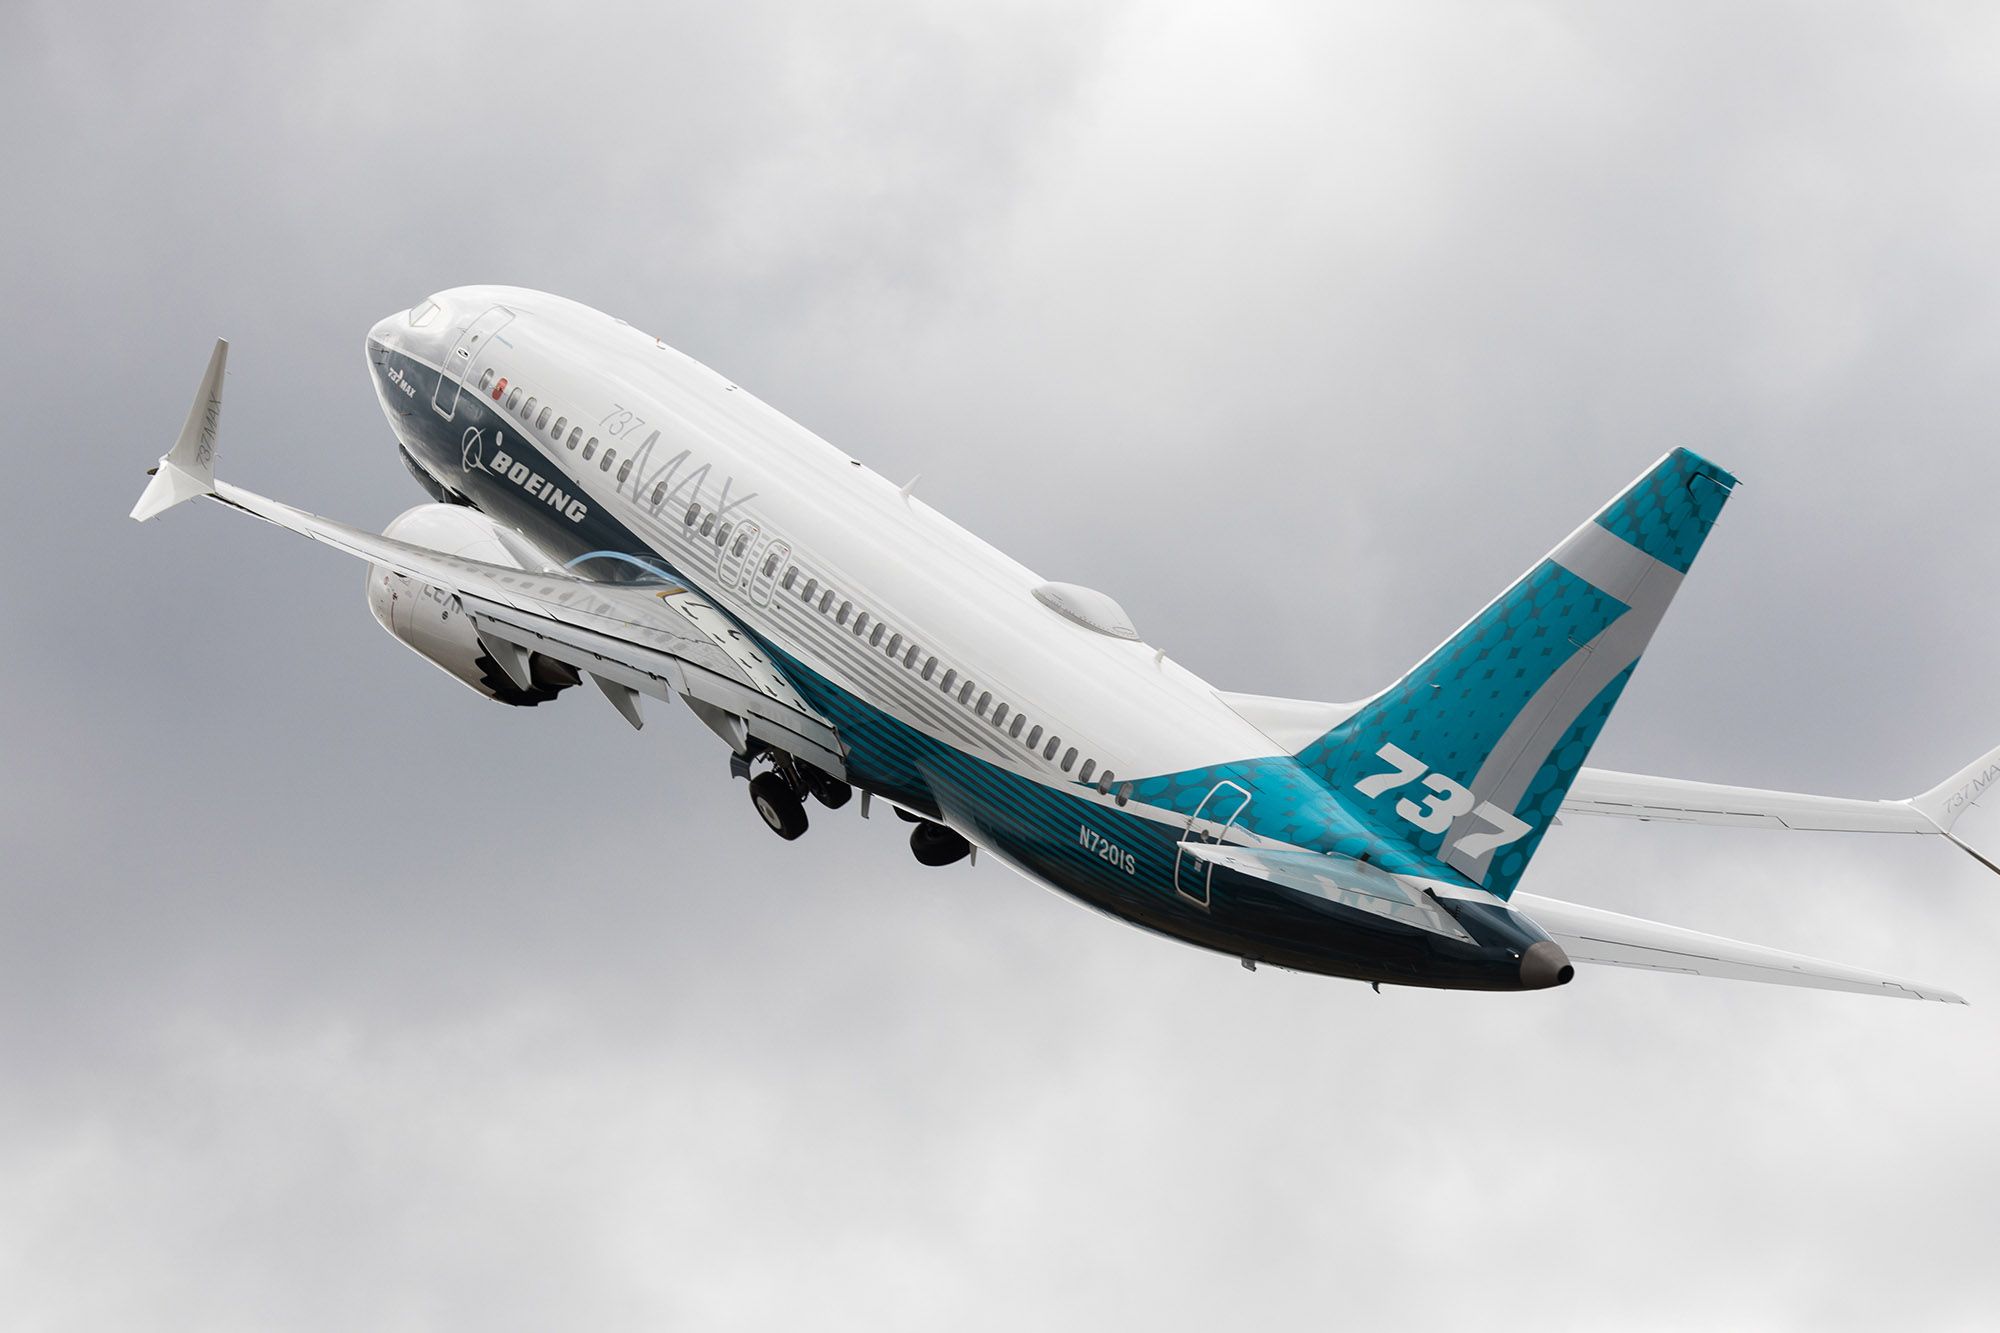 Ermenistan’da kayıtlı Amerikan Boeing 737 uçağı bilinmeyen nedenlerden dolayı İran’da bulundu